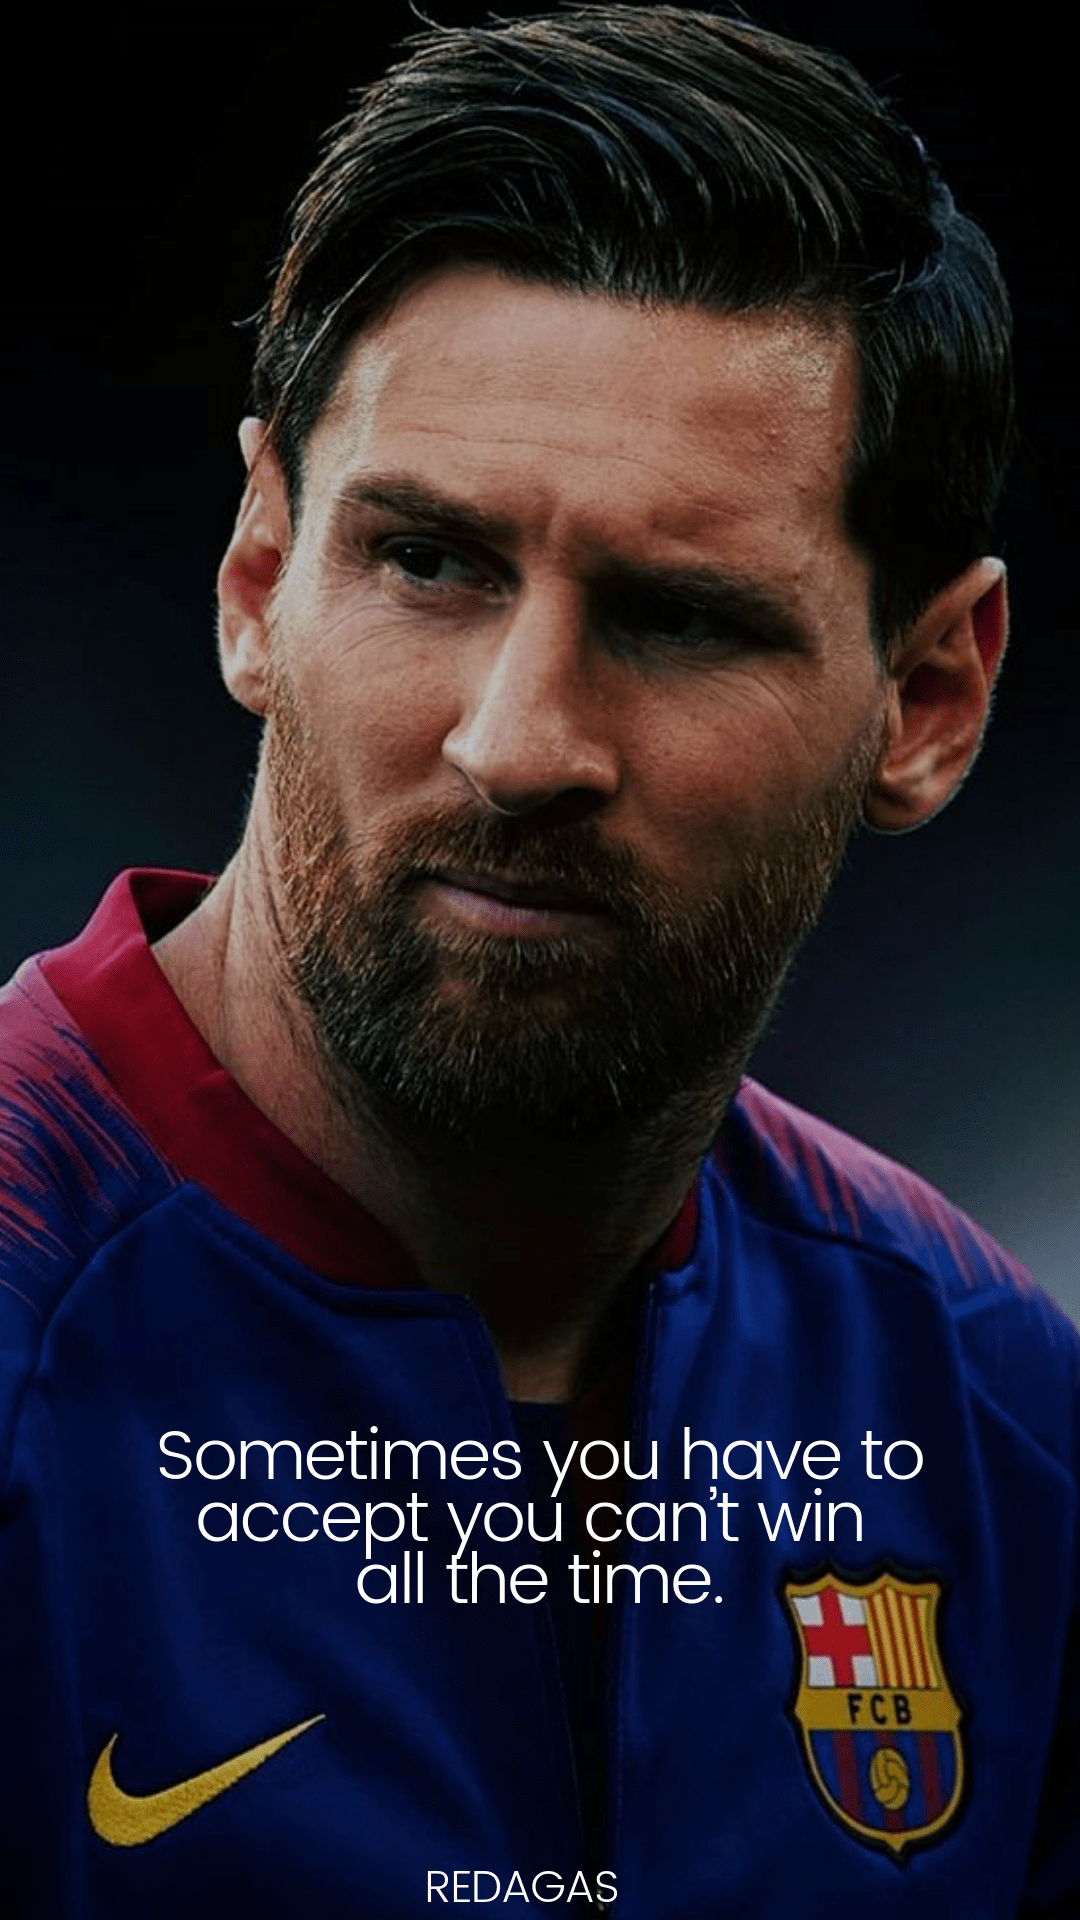 Messi Quotes Backgrounds - Những bức ảnh nền độc đáo với những câu nói cảm động của Messi chắc chắn sẽ mang lại cho bạn không gian làm việc / học tập mới mẻ và ấn tượng. Hãy truy cập ngay để tải về các hình ảnh nền tuyệt đẹp này!